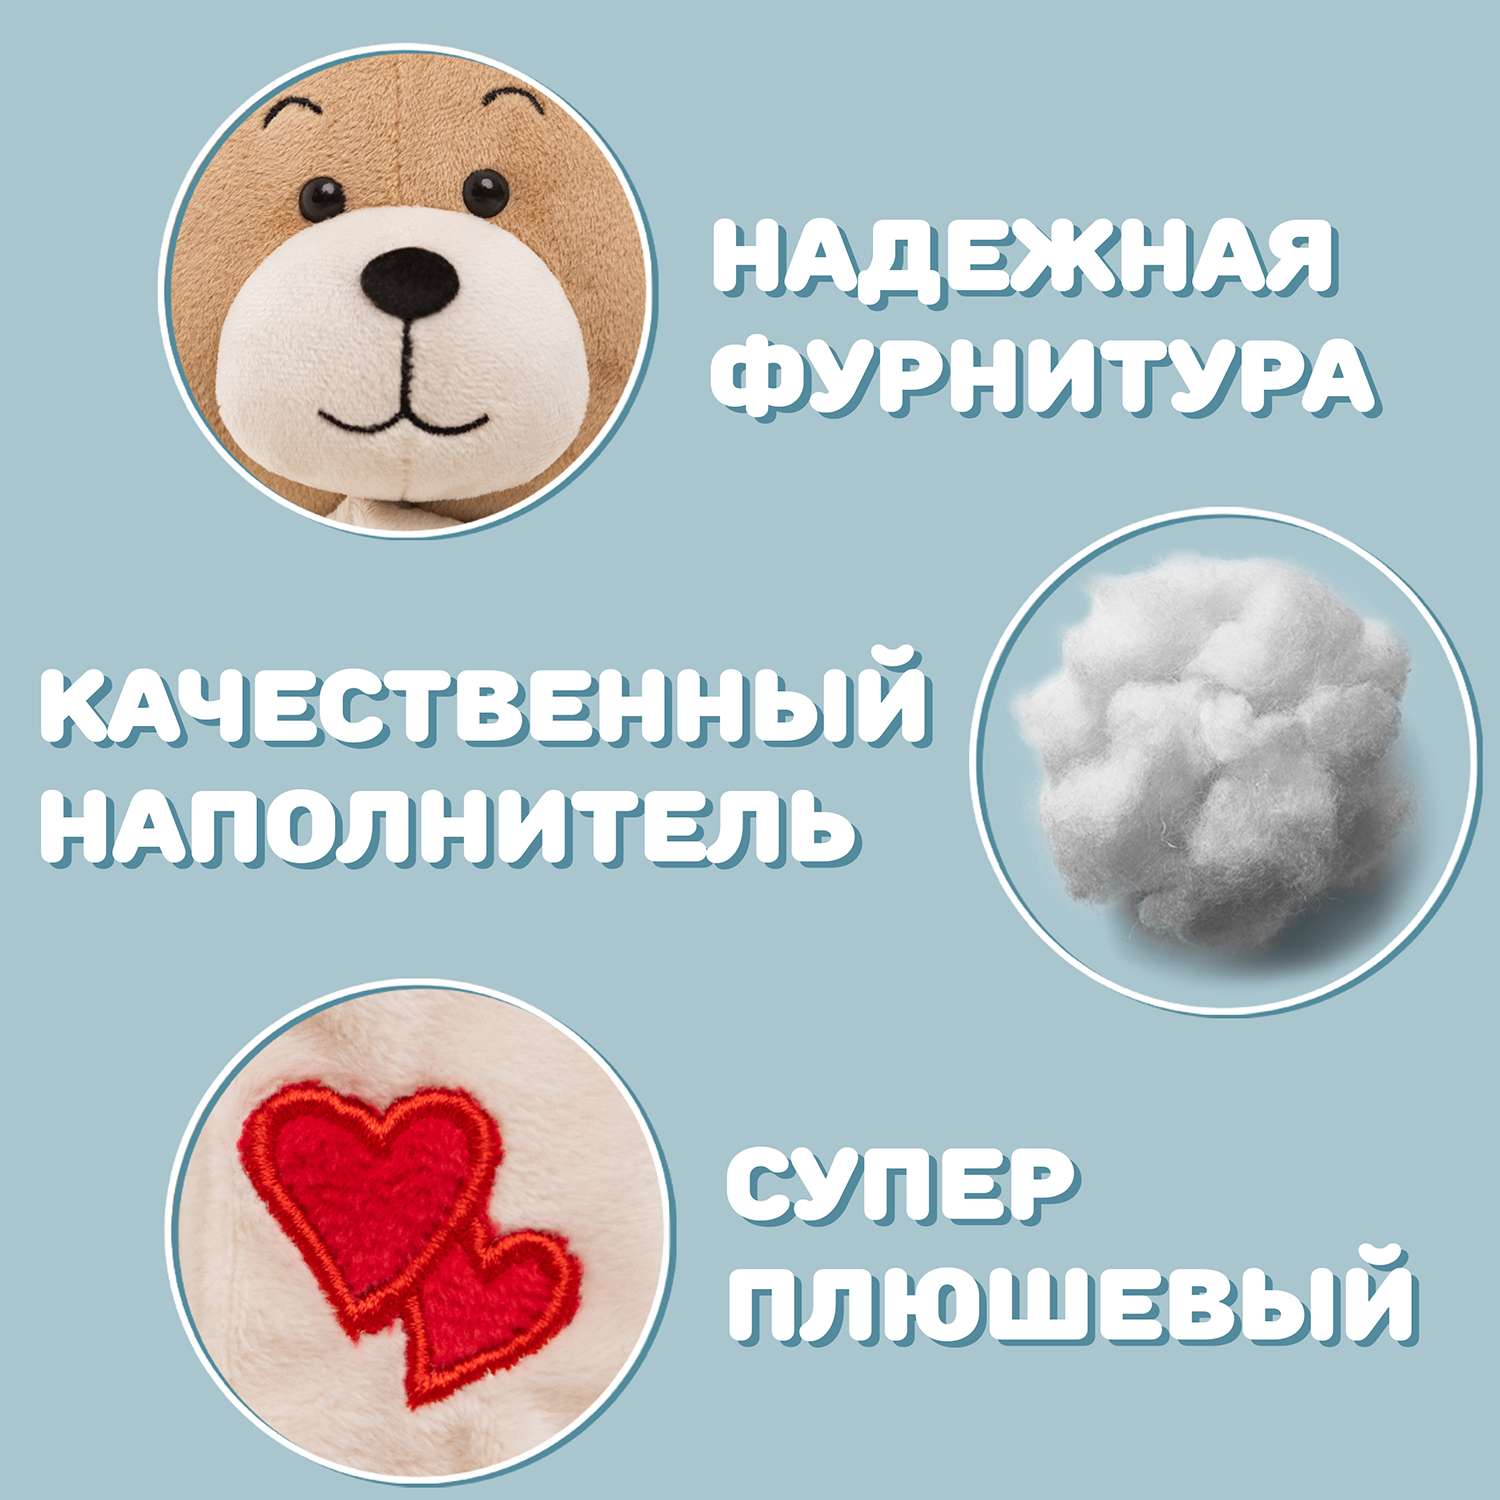 Медведь Мягкие игрушки БелайТойс Боня кофейный - фото 5